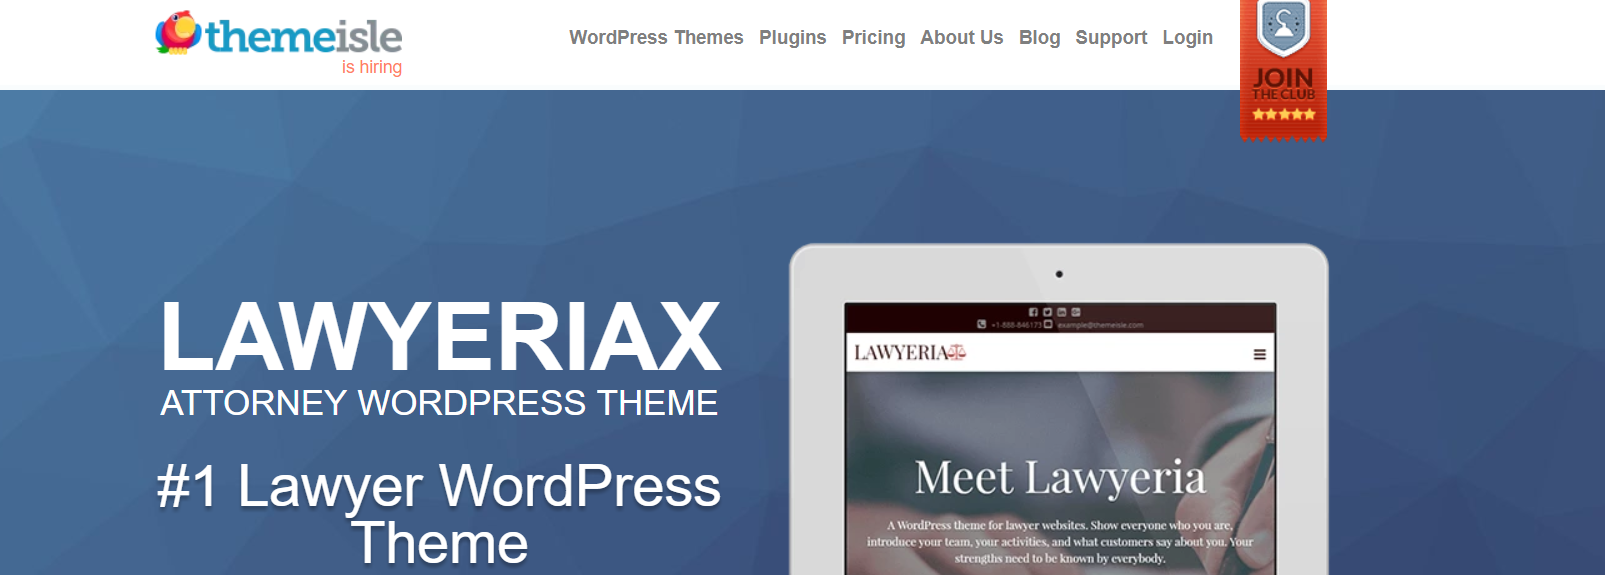 LawyeriaX律师-WordPress商业主题